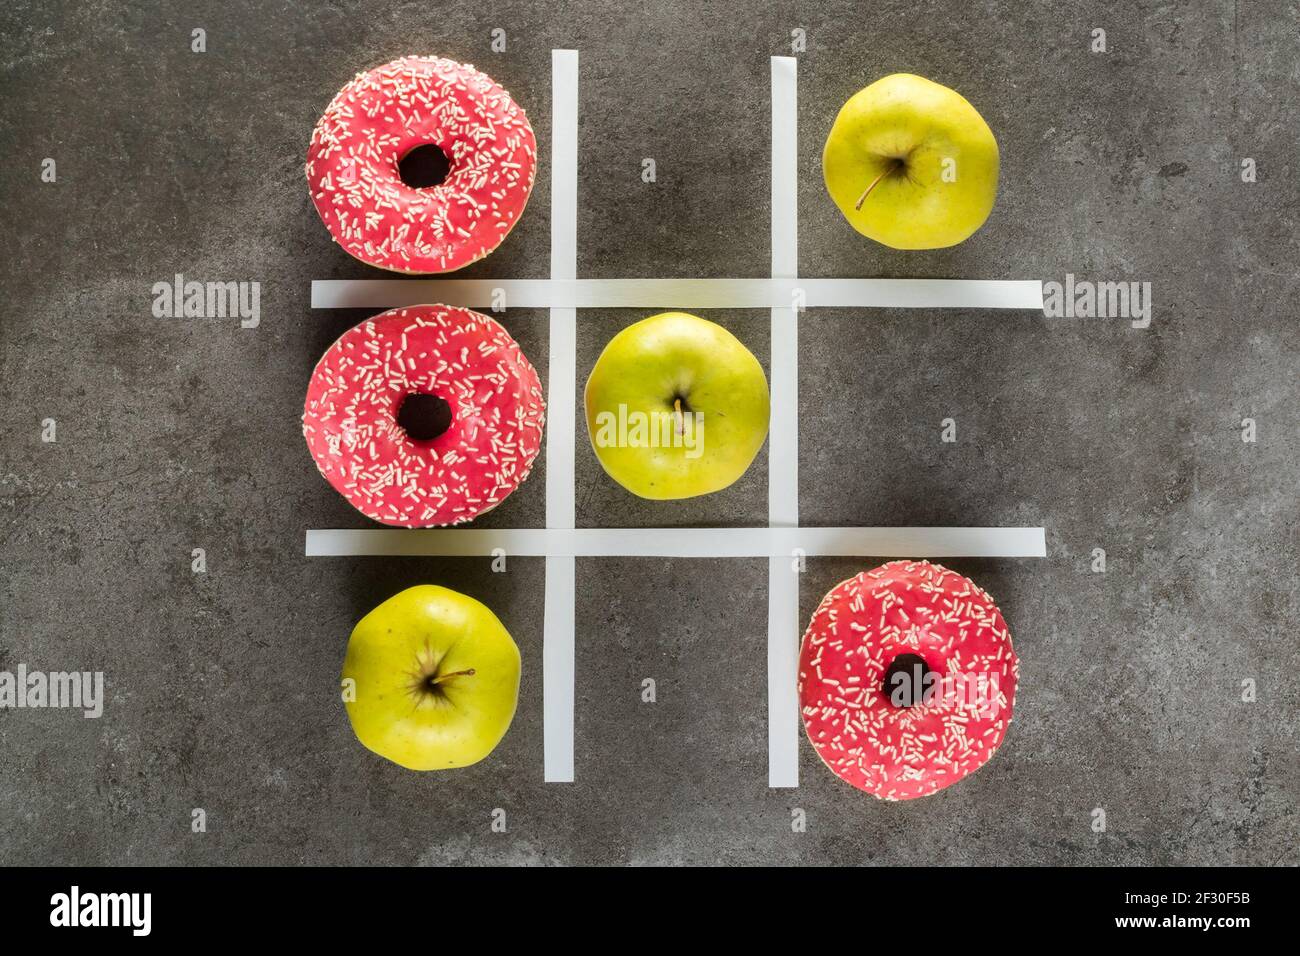 Comida sana vs malsana, manzanas verdes vs donuts en TIC tac juego de dedo del pie Foto de stock